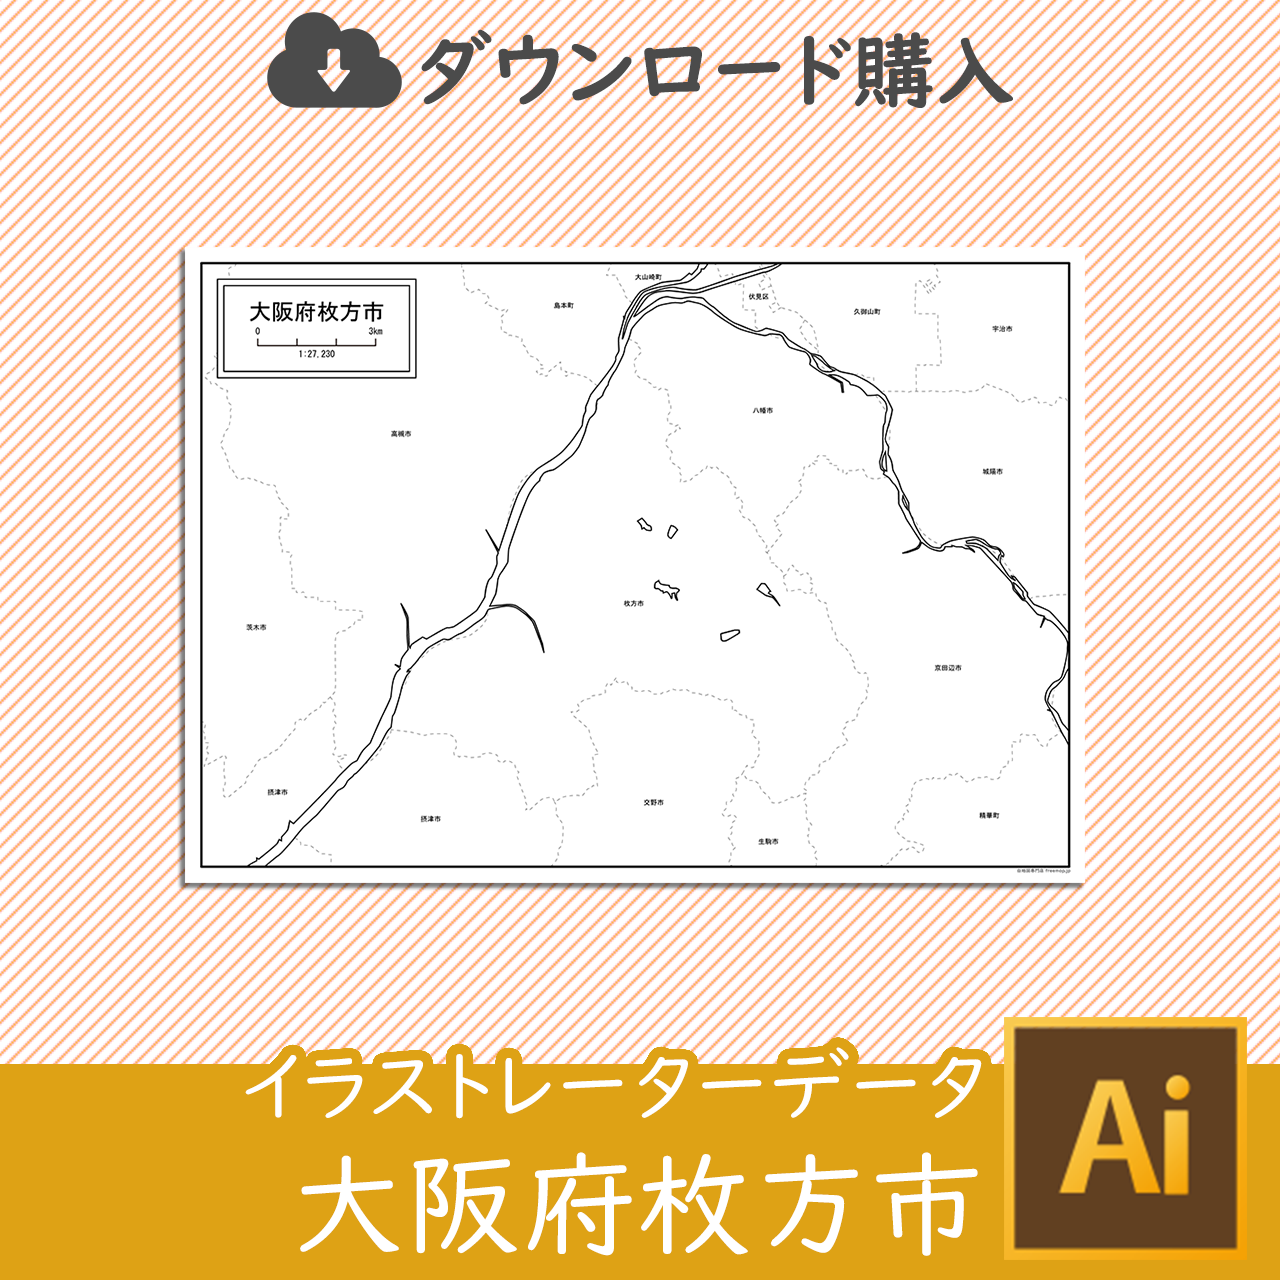 枚方市のaiデータのサムネイル画像